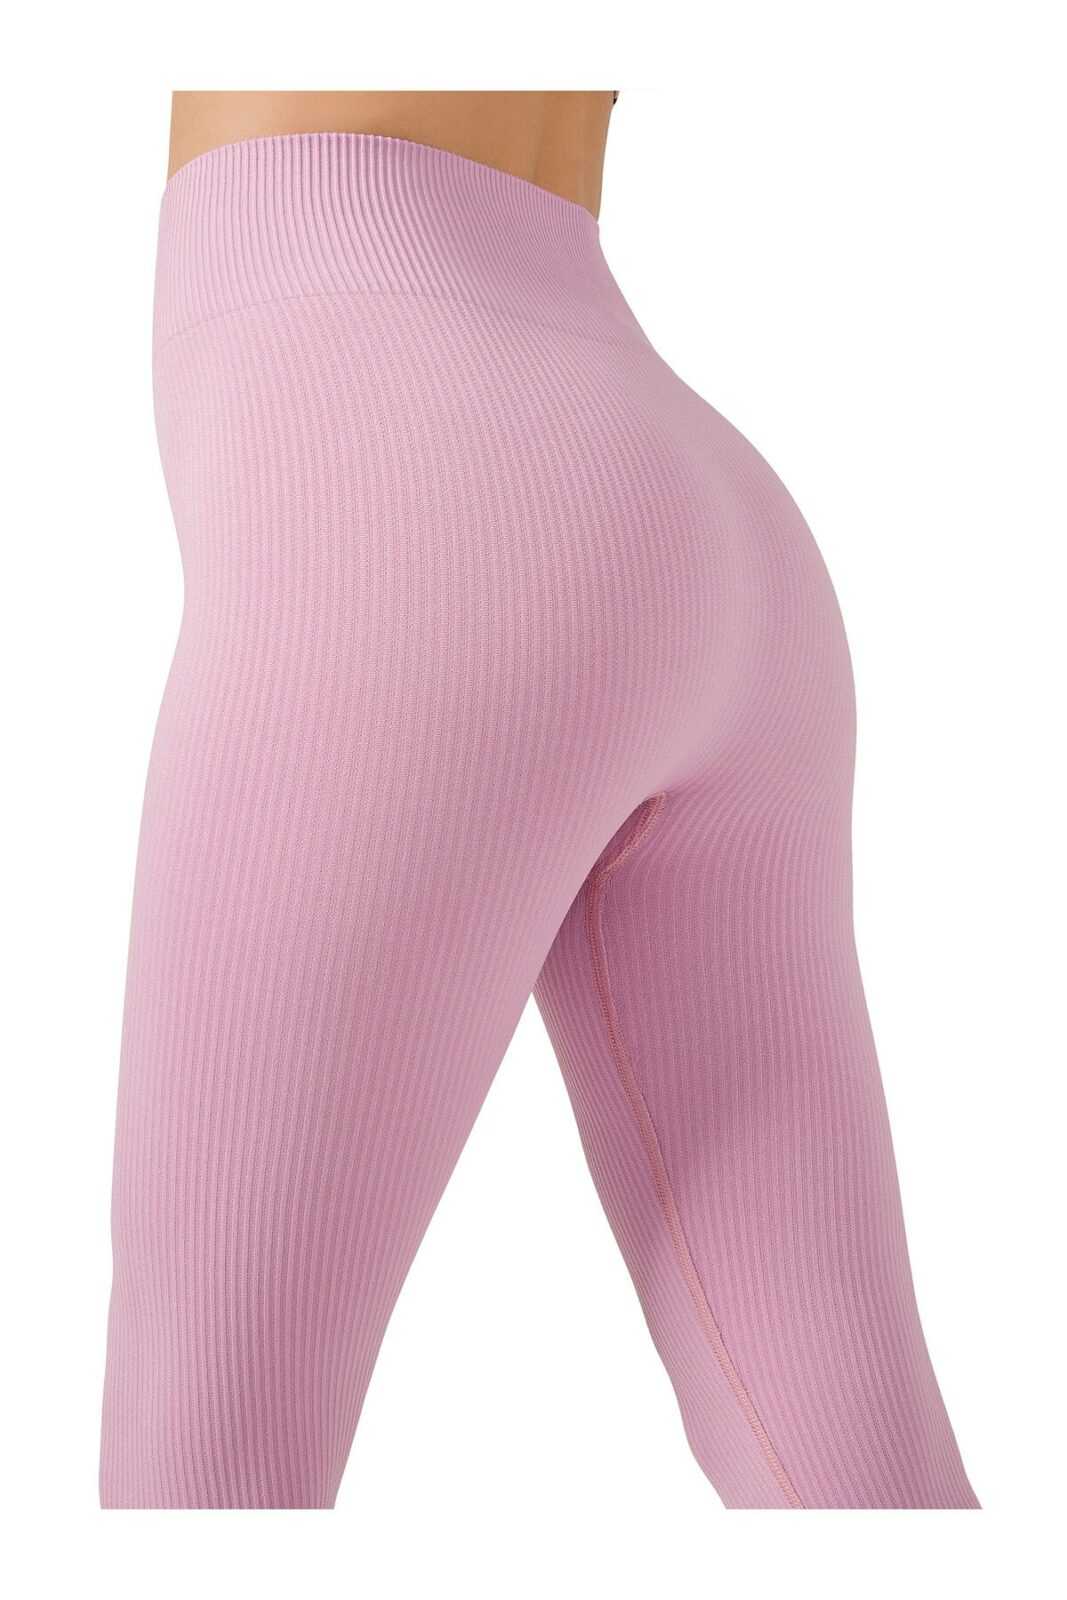 LOS OJOS Sport-leggings Lila Hoher Bund für Damen - L/XL